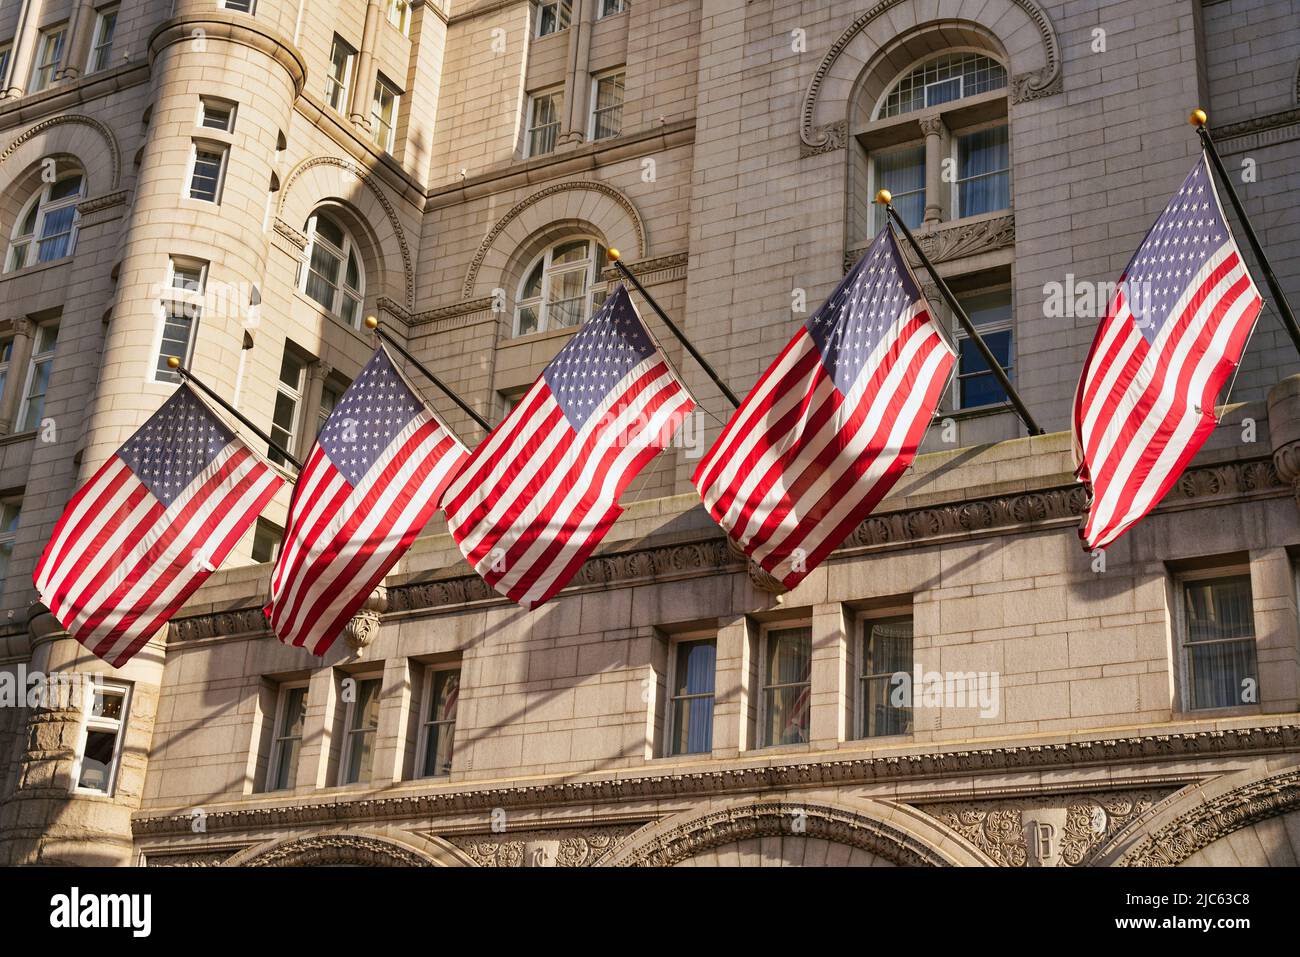 Banderas DE EE.UU. En el antiguo edificio de la oficina de correos en Washington, D.C., EE.UU. Banderas estadounidenses con estrellas y rayas en la luz del sol. Foto de stock